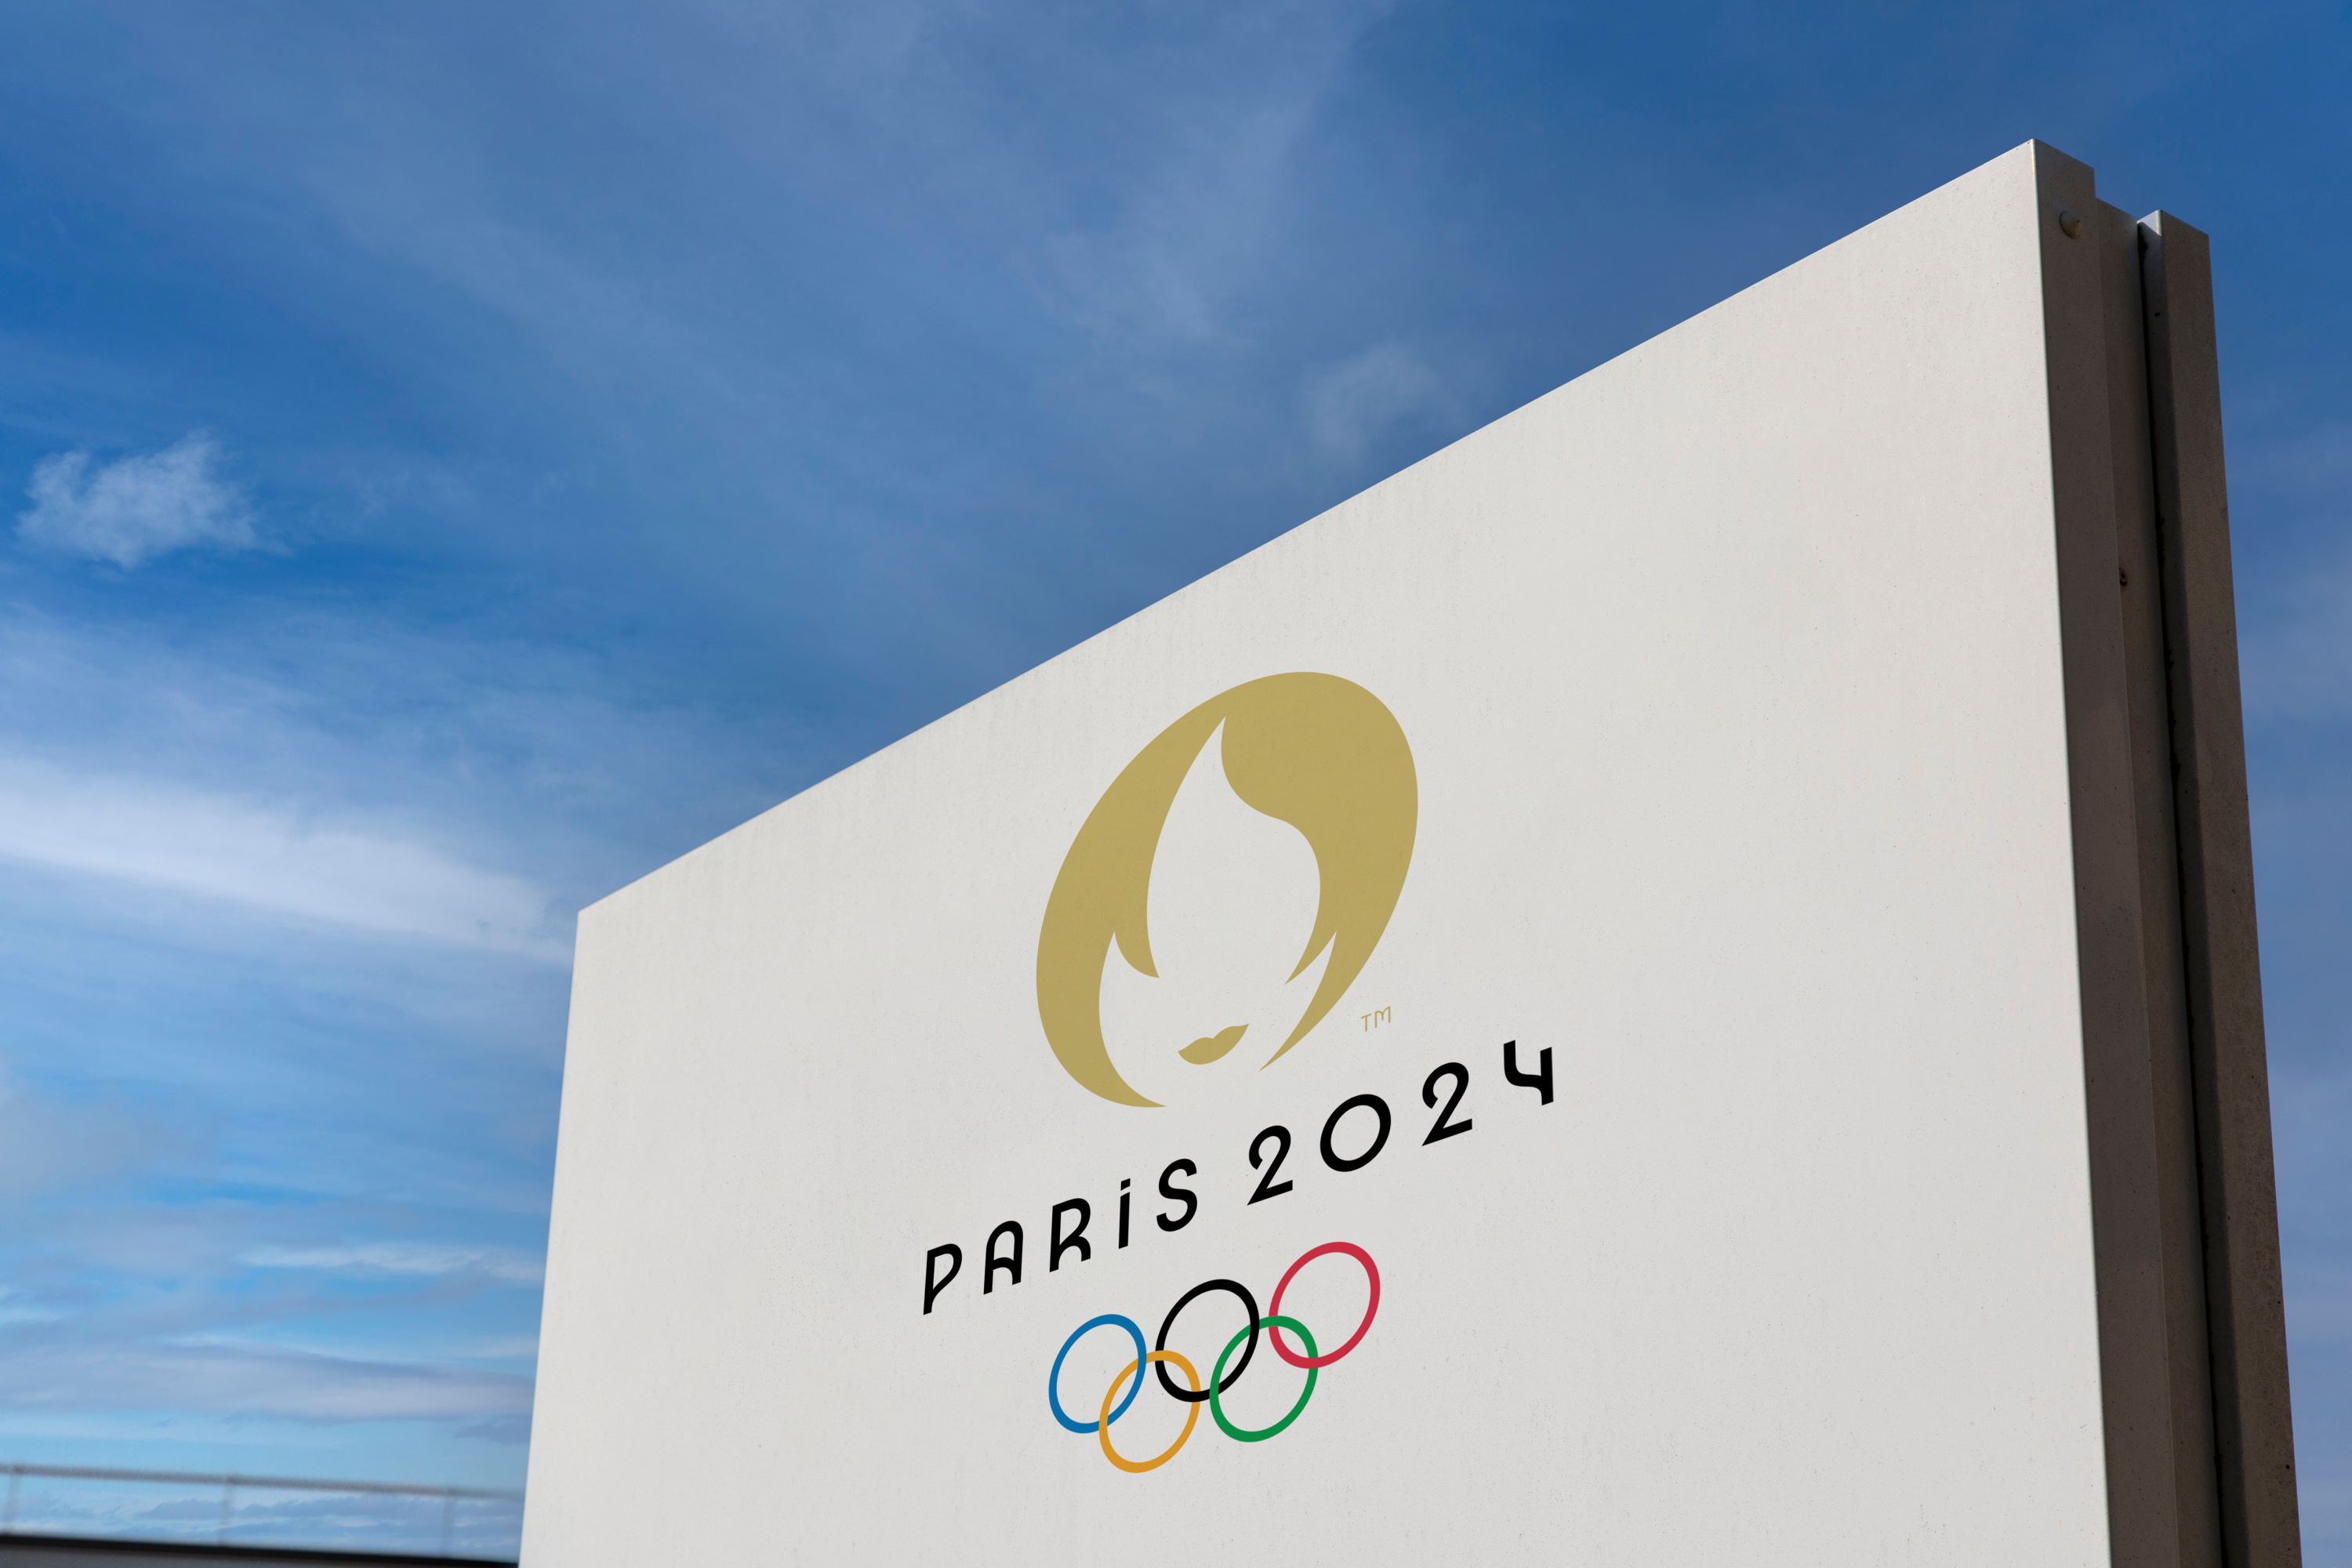 Les drapeaux des Jeux Olympiques de Paris 2024 ont fait étape à Reims -  France Bleu